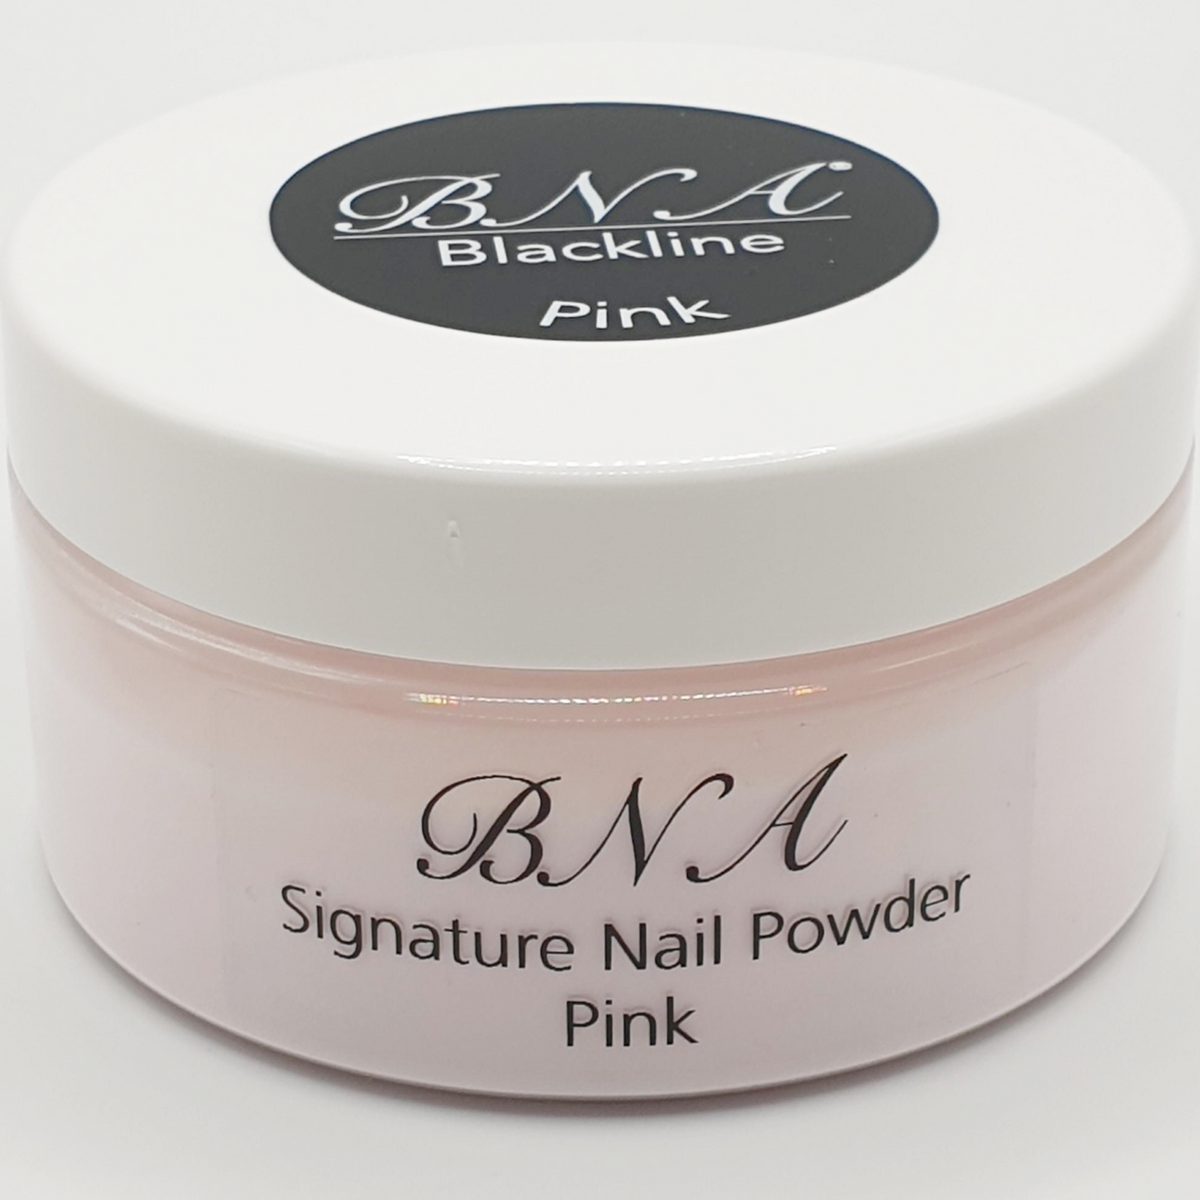 Signature Nail Powder Pink